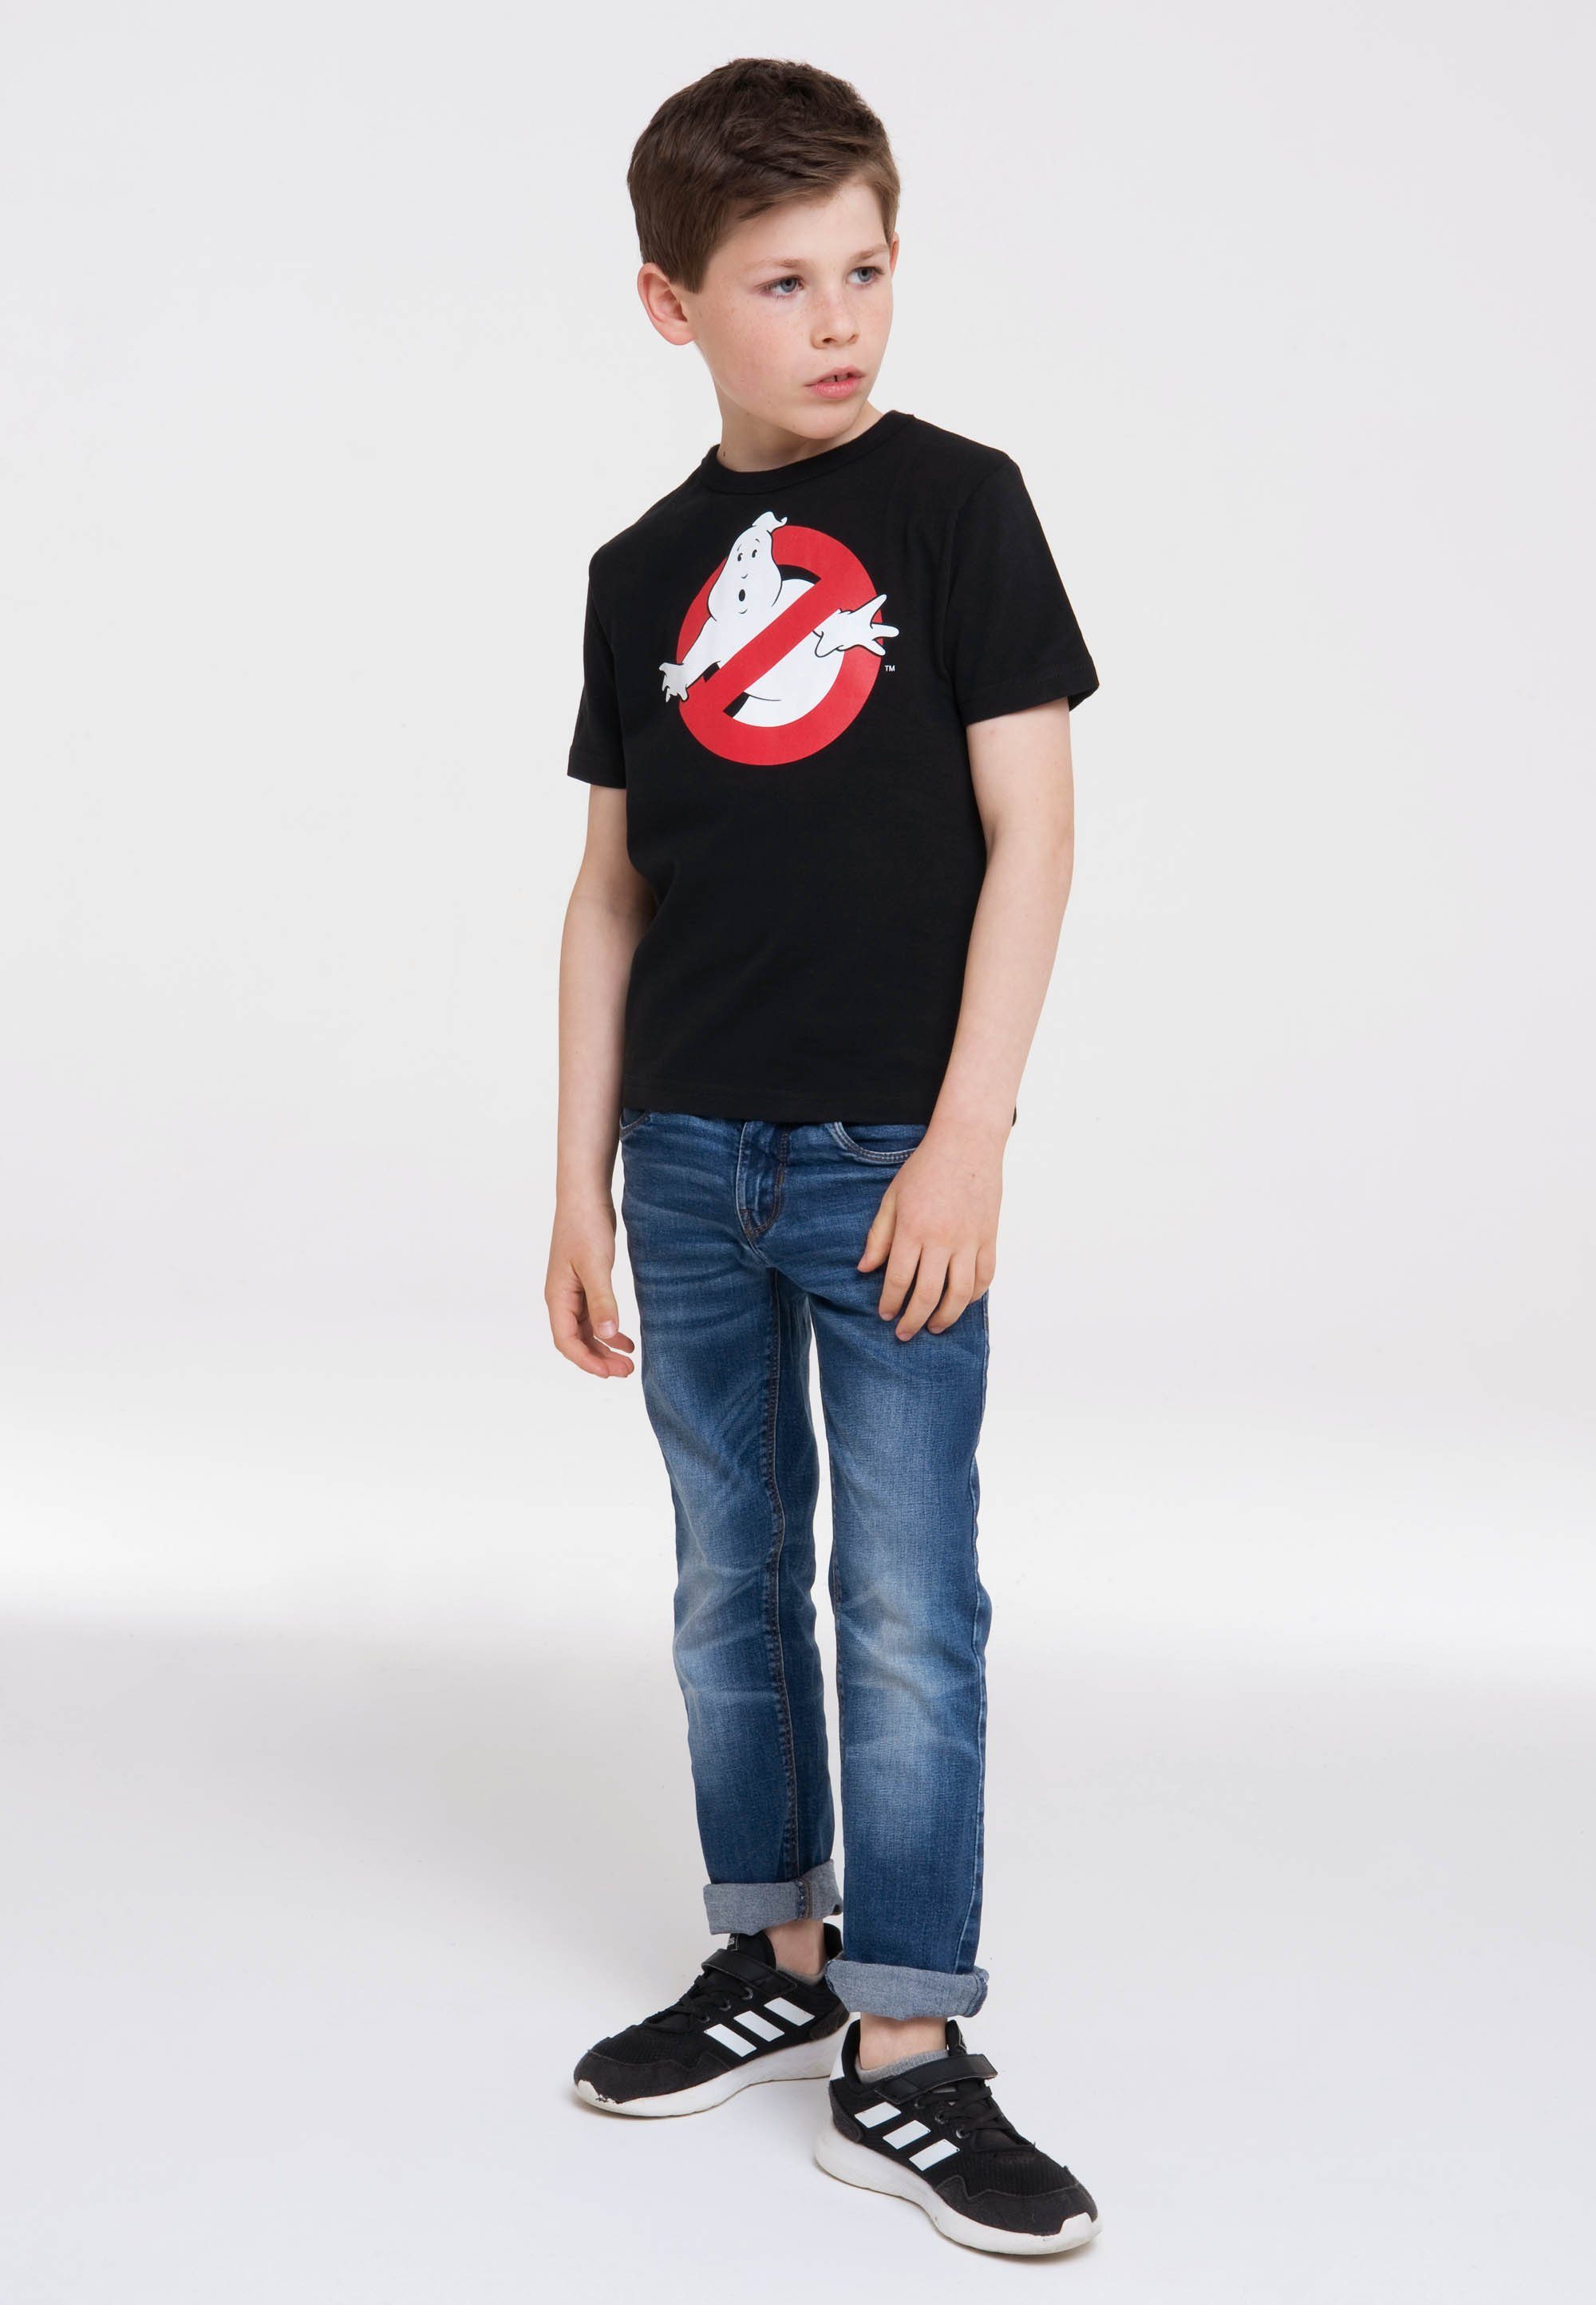 Ghostbusters Design T-Shirt LOGOSHIRT mit lizenziertem